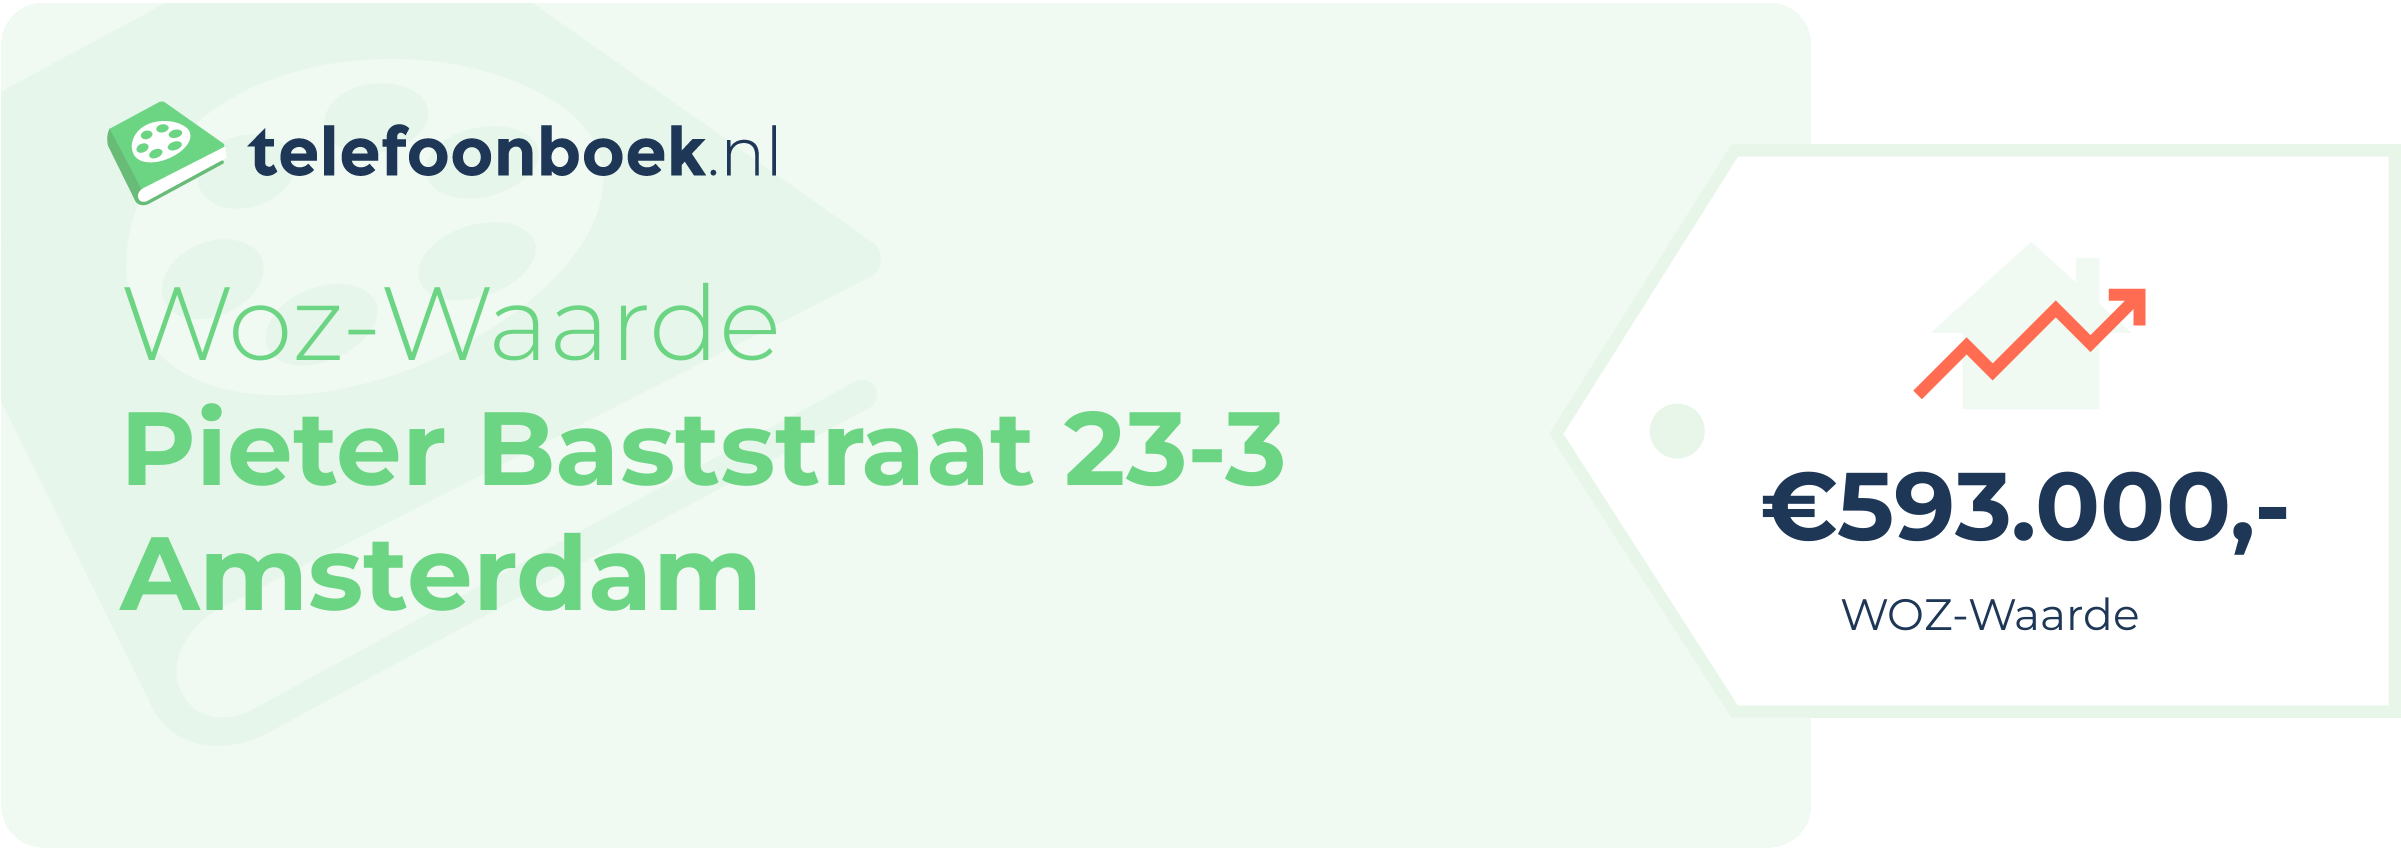 WOZ-waarde Pieter Baststraat 23-3 Amsterdam